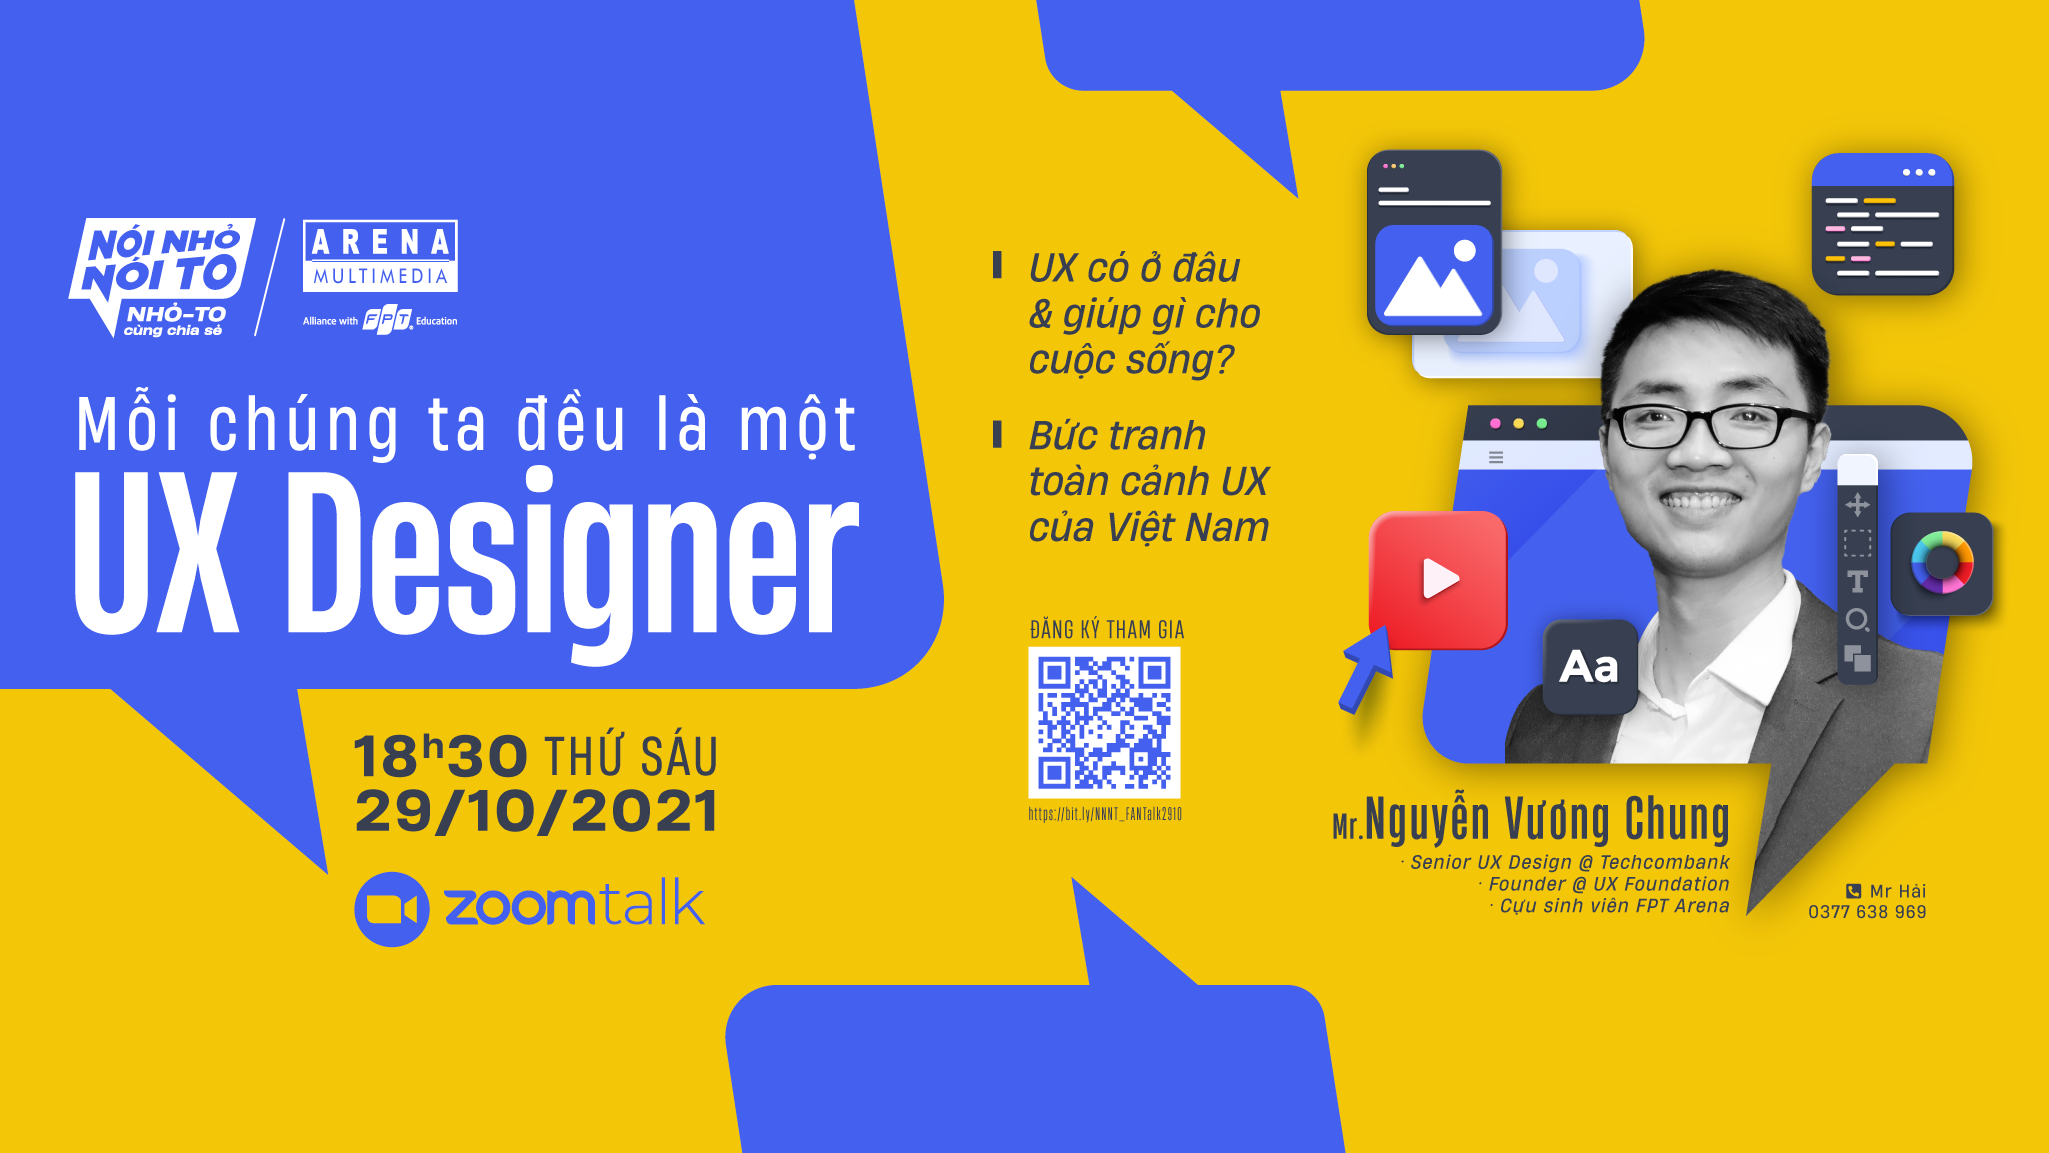 Zoom Talk “Mỗi chúng ta đều là một UX Designer”